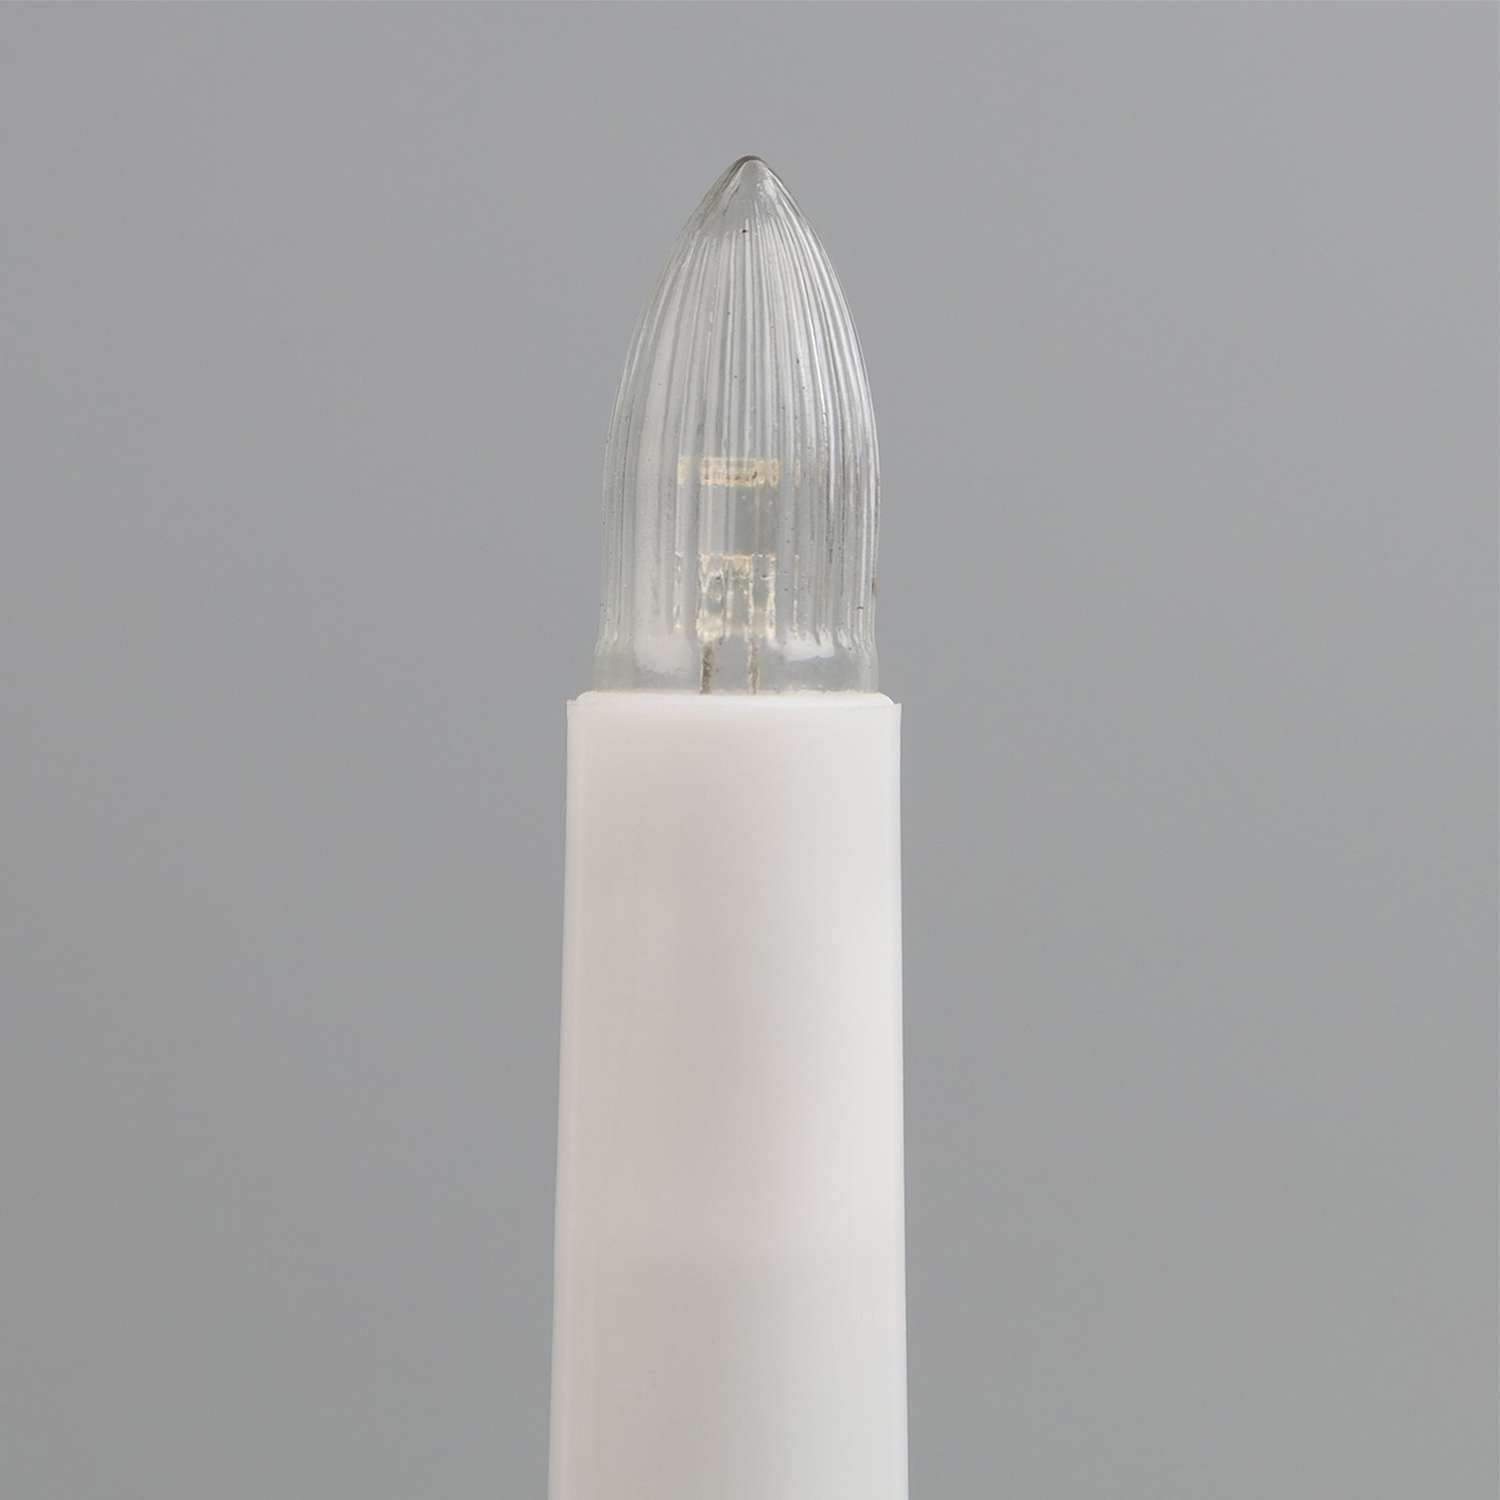 Лампа Sima-Land светодиодная для рождественской горки 0.35 Вт цоколь Е10 теплый белый 2 шт - фото 4